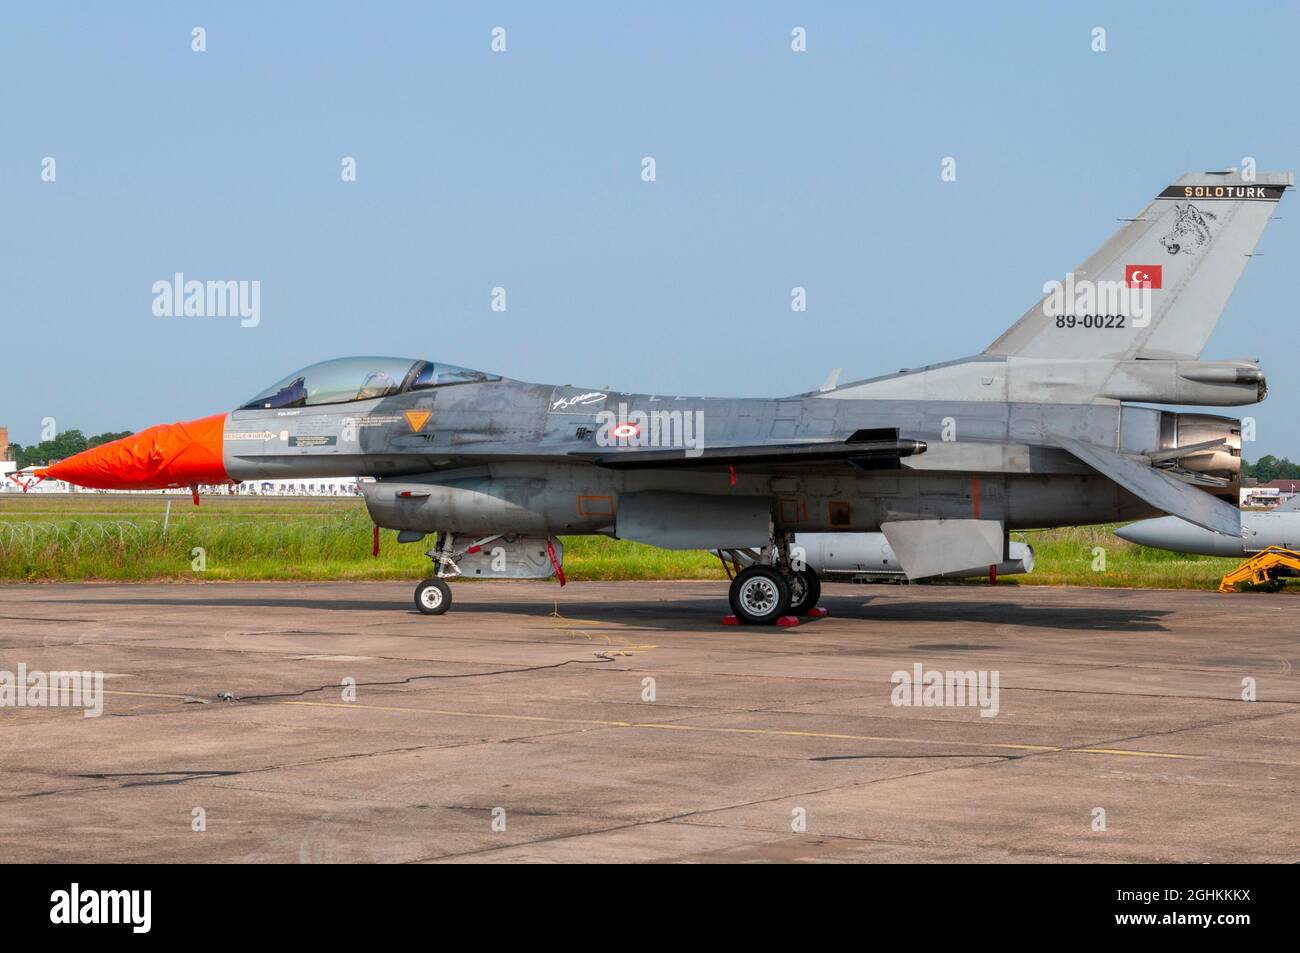 Solo Turk Turkish Air Force General Dynamics F-16 Fighting Falcon jet fighter aereo al RAF Waddington Airshow, Regno Unito. F-16C di ricambio per l'espositore Foto Stock